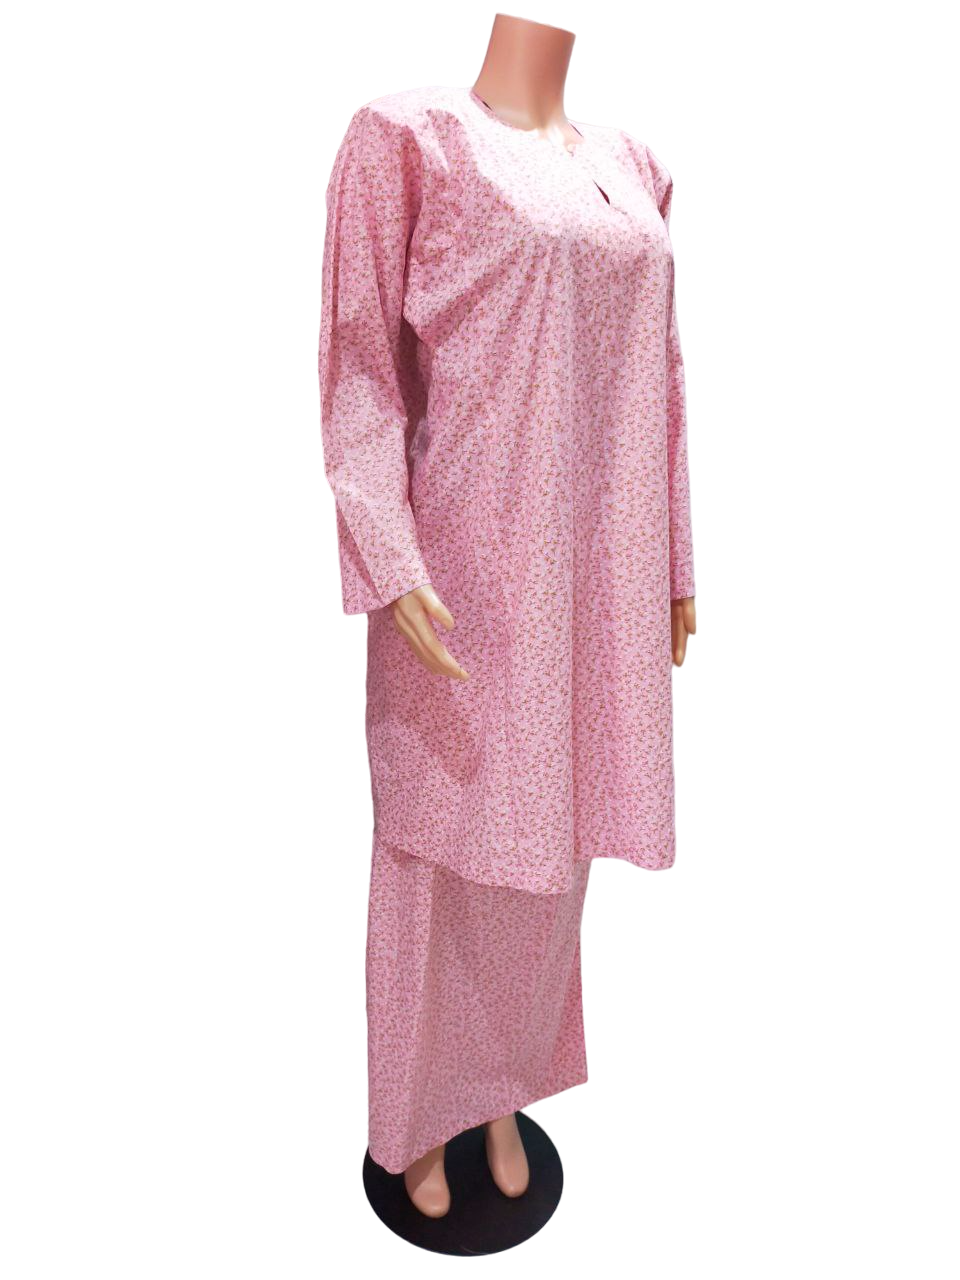 Baju Kurung Pesak Traditional Johor Pink